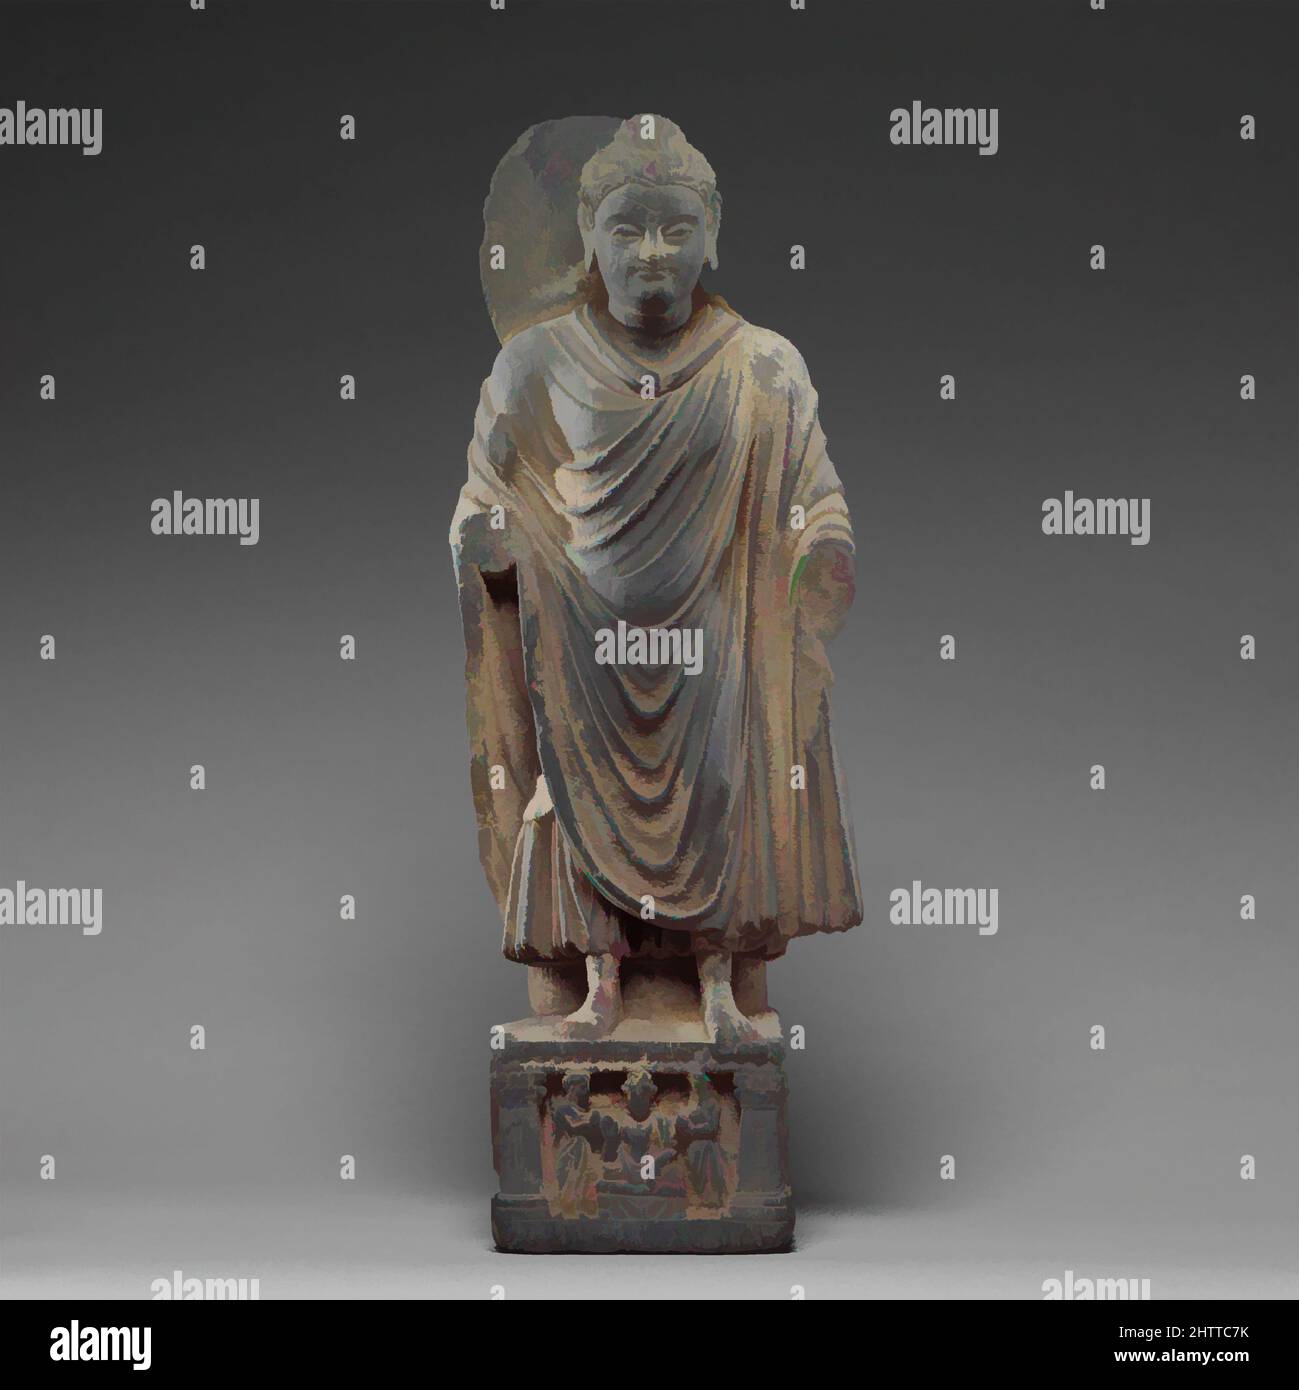 Arte ispirata da Buddha in piedi, ca. 3rd–4th secolo, Pakistan (antica regione di Gandhara), scista, H. 20 pollici (50,8 cm); W. 7 1/4" (18,4 cm); D. 4 1/16" (10,3 cm), scultura, tali immagini del Buddha sono state trovate in gran numero nei precetti sacri pubblici di Gandhara. Le opere classiche del Buddha modernizzate da Artotop con un tuffo di modernità. Forme, colore e valore, impatto visivo accattivante sulle emozioni artistiche attraverso la libertà delle opere d'arte in modo contemporaneo. Un messaggio senza tempo che persegue una nuova direzione selvaggiamente creativa. Artisti che si rivolgono al supporto digitale e creano l'NFT Artotop Foto Stock